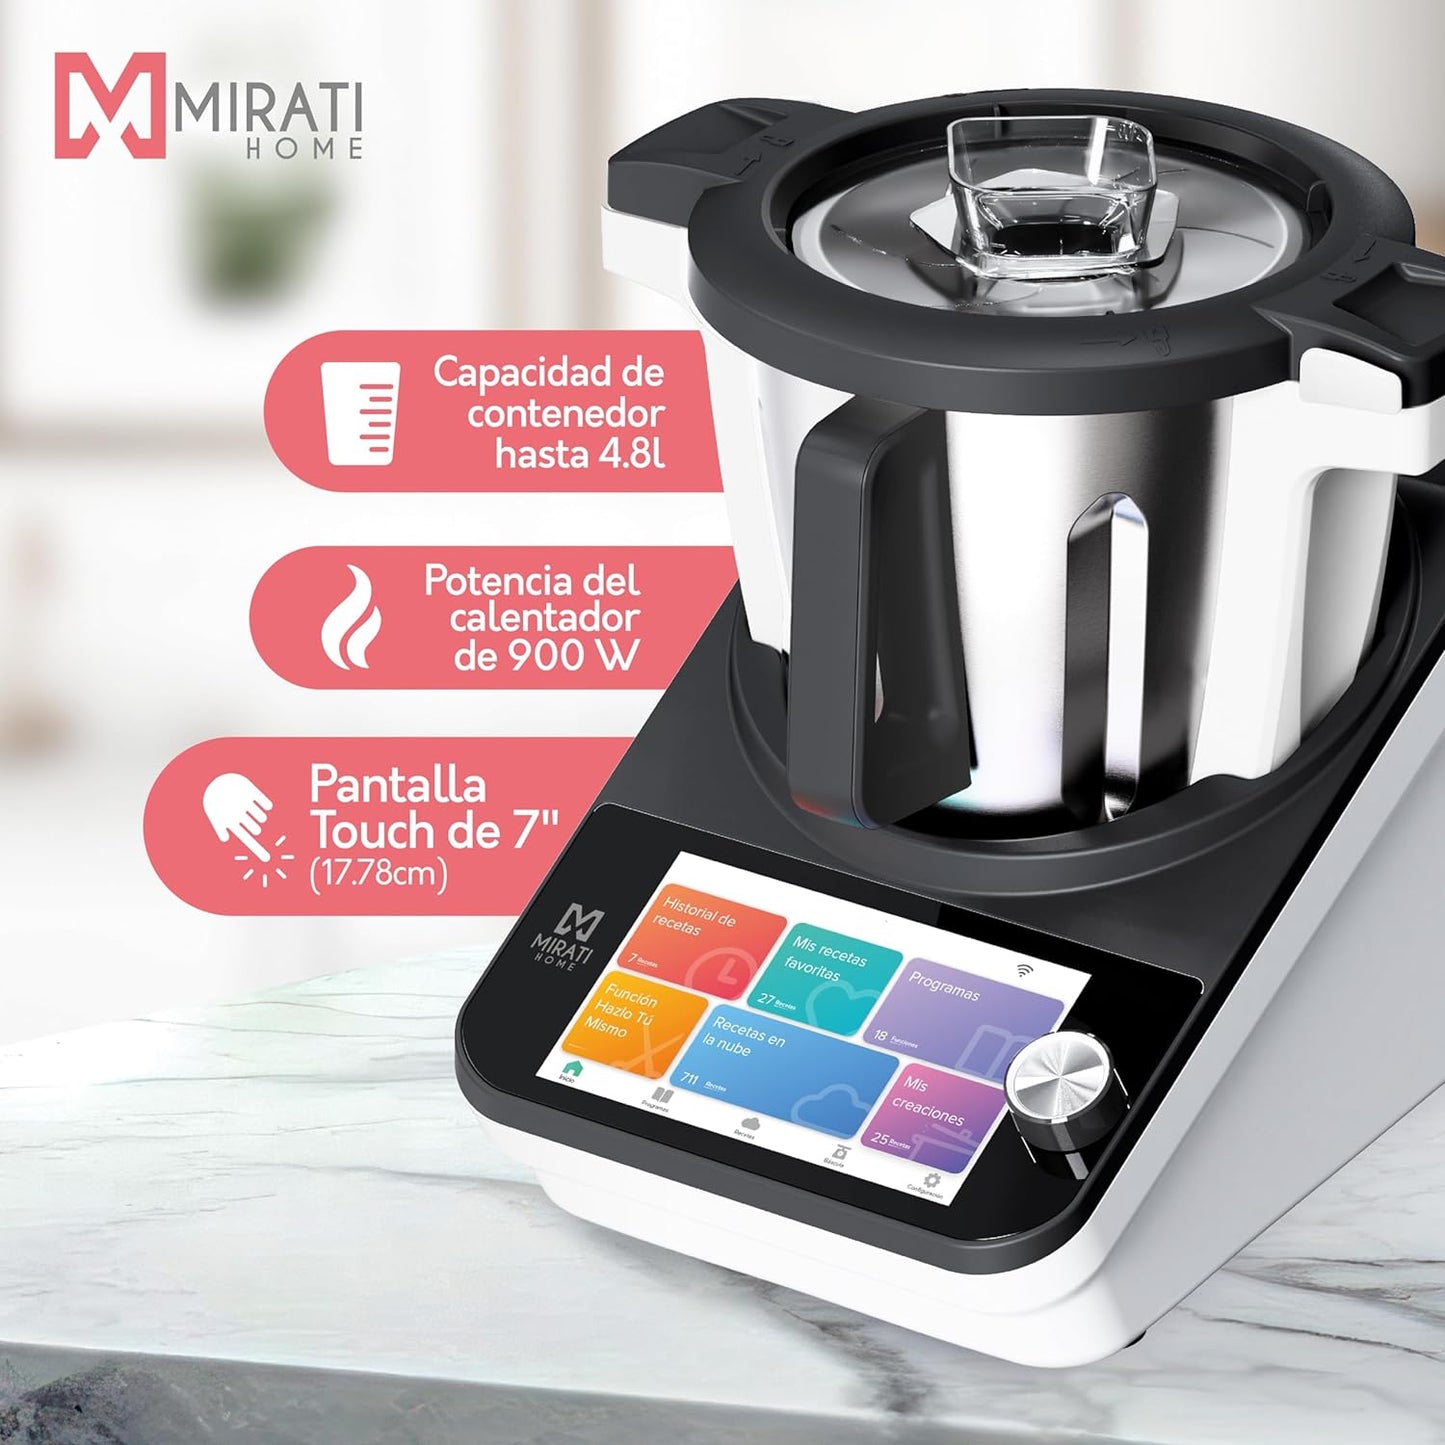 Robot de cocina Mirati Home - 16 funciones, 700 recetas